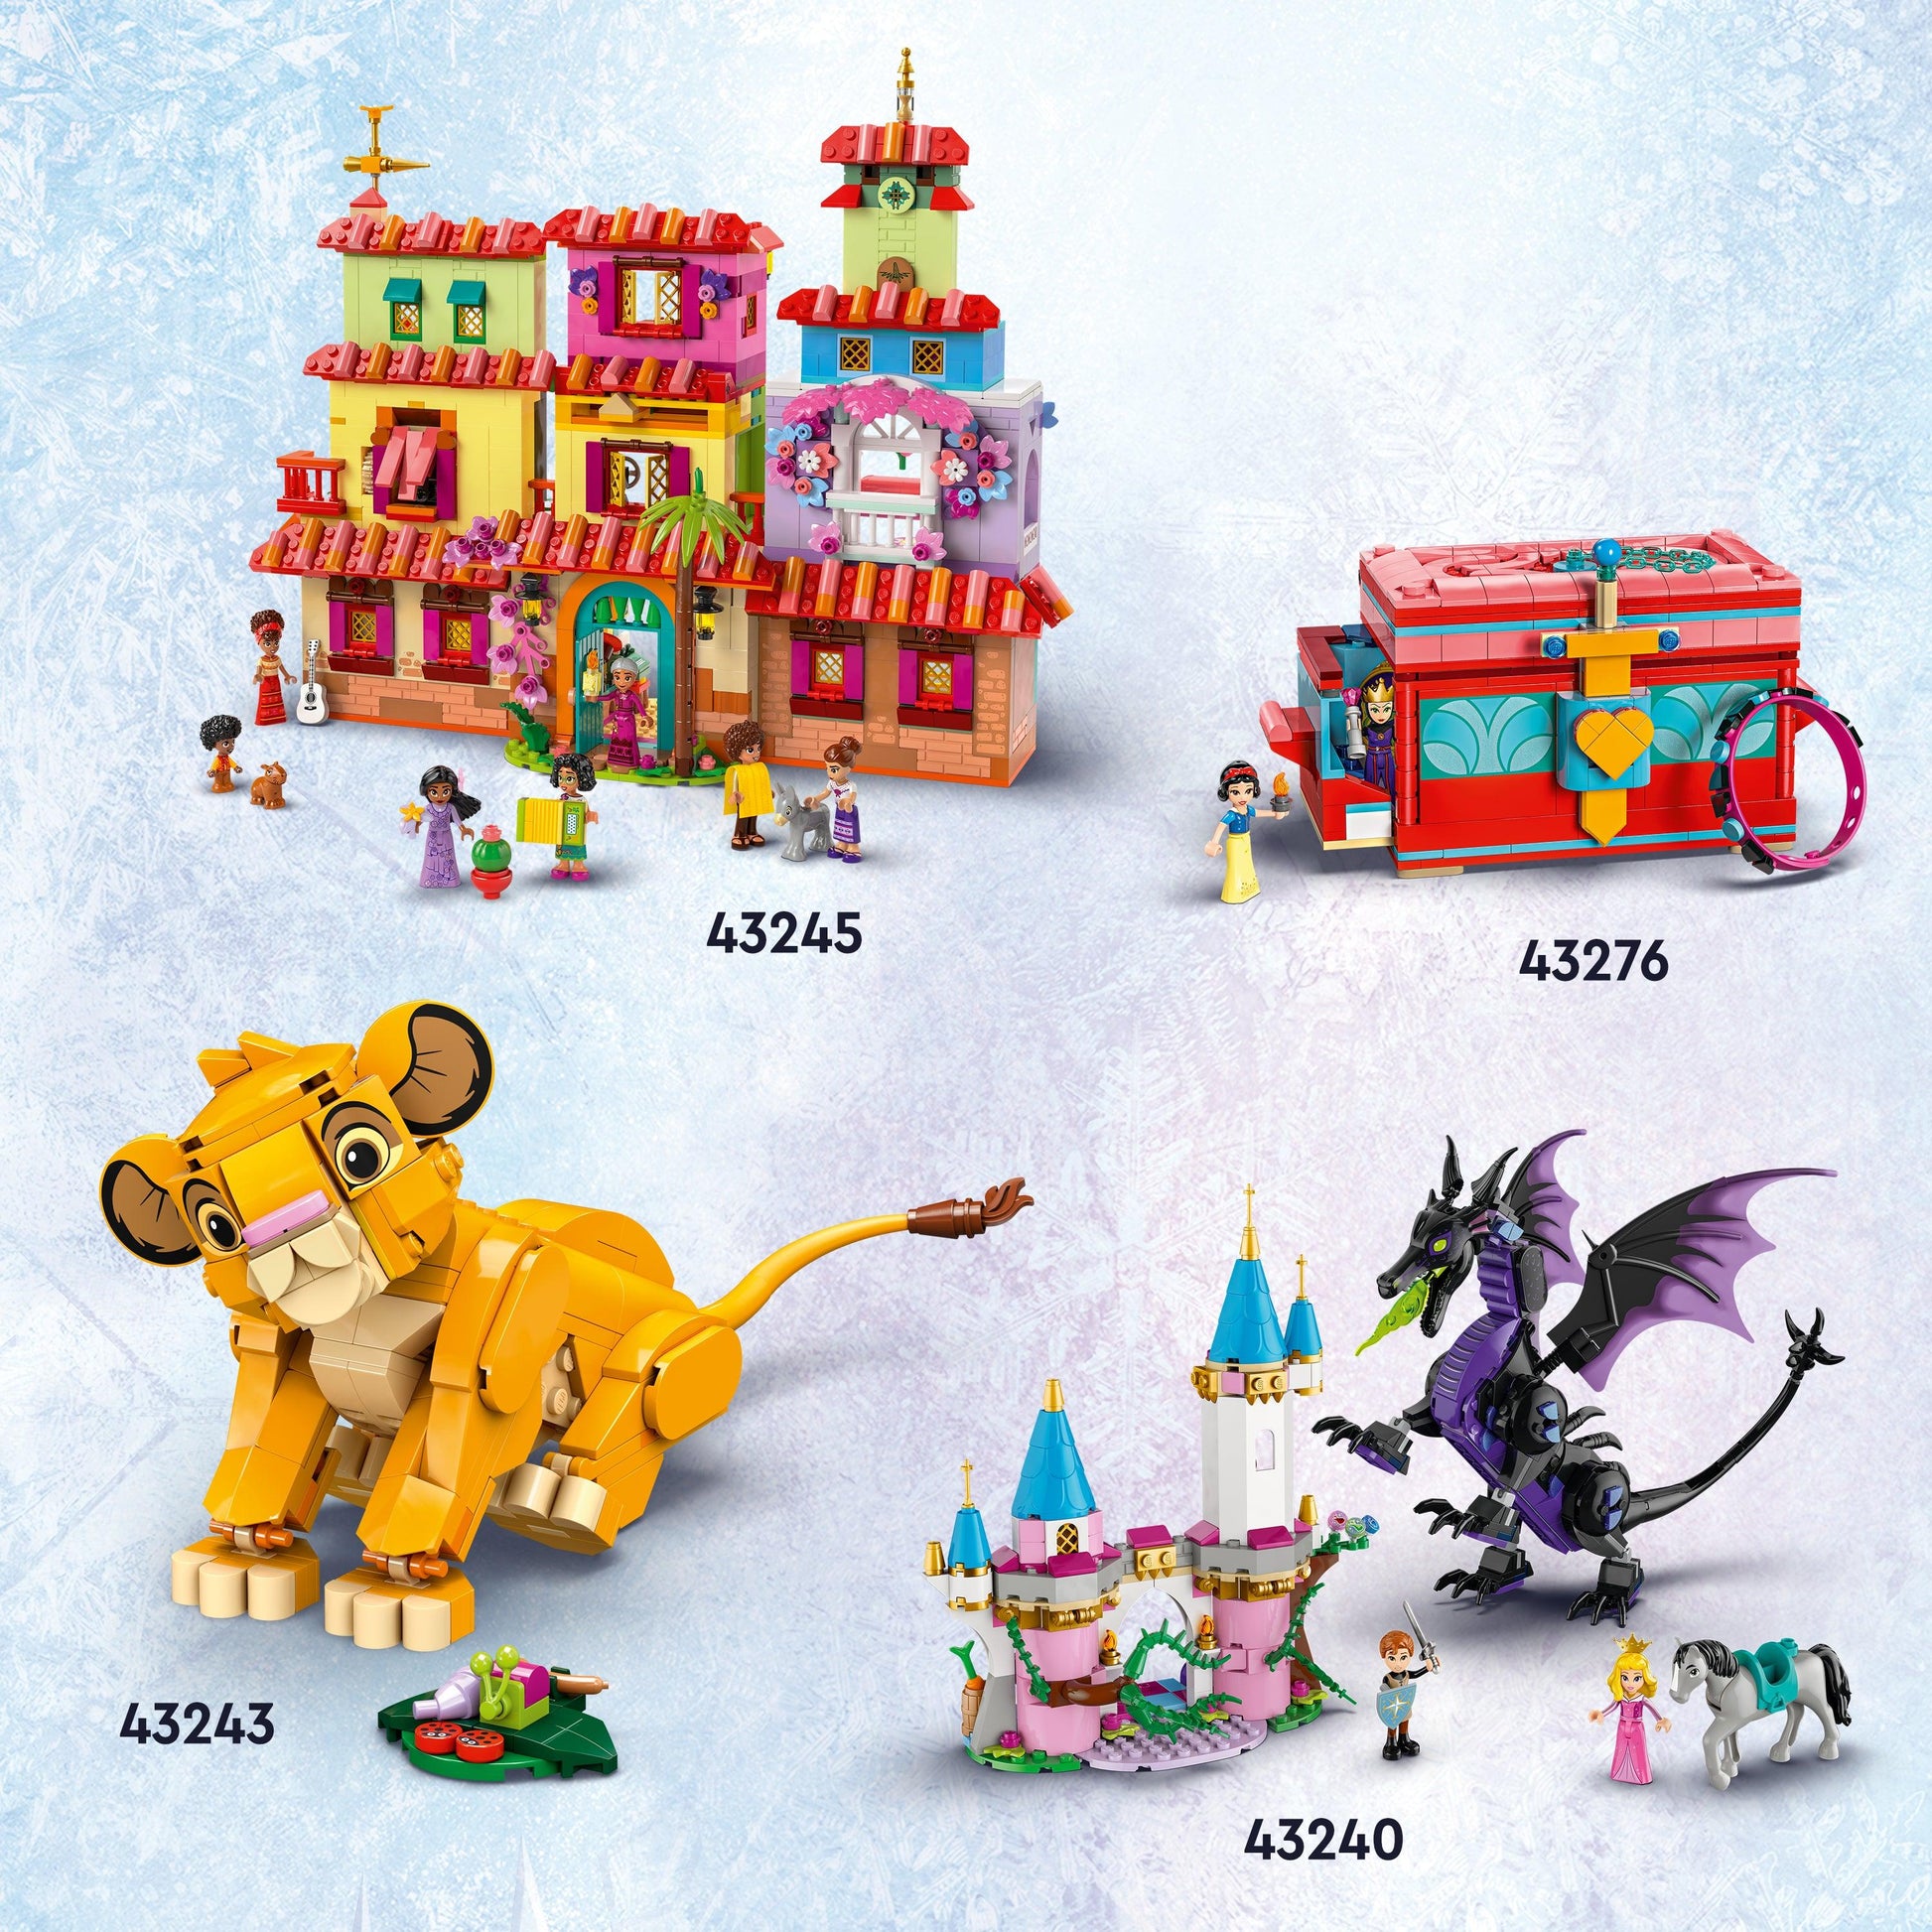 LEGO Sneeuwwitje Sieradenkistje 43276 Disney (Pre-Order: verwacht juni) LEGO DUPLO @ 2TTOYS LEGO €. 37.99